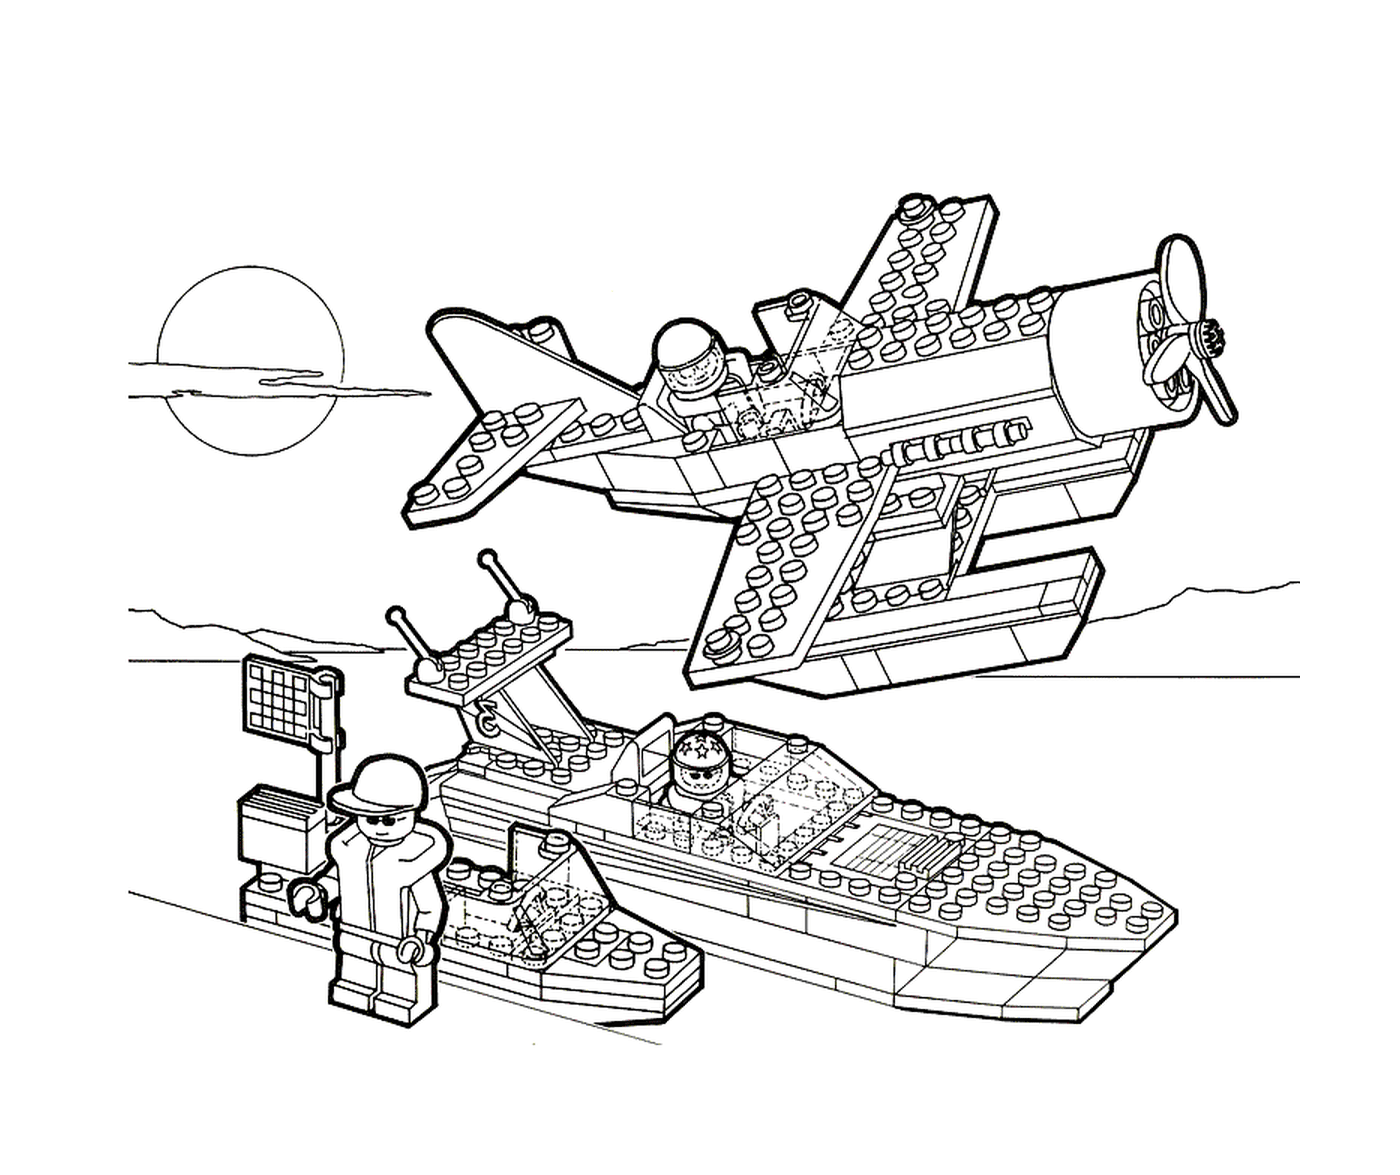  طائرة وزورق من طراز Lego 